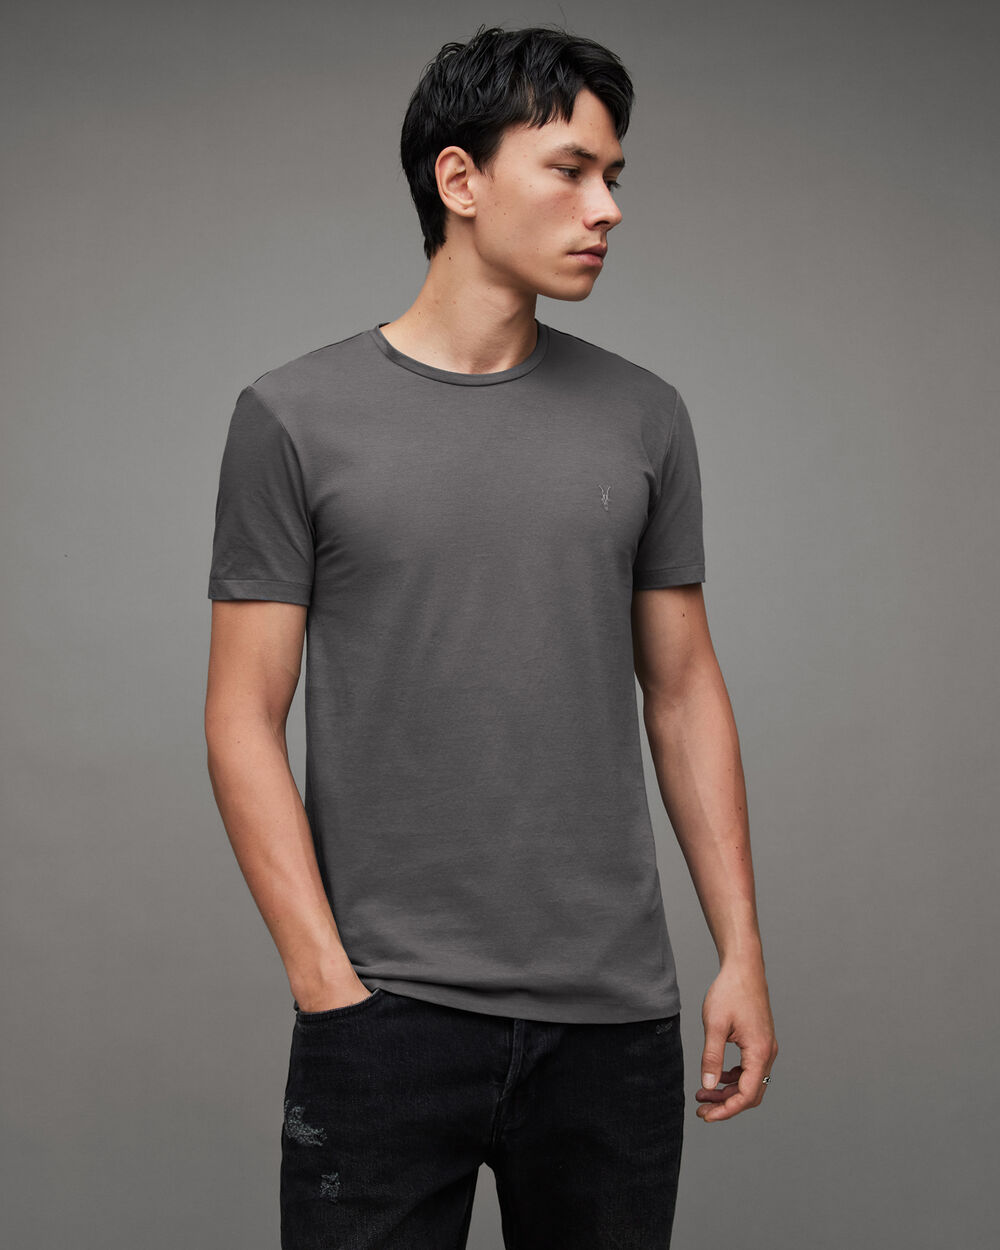 Узкая футболка Tonic с круглым вырезом Ramskull AllSaints, галактический серый